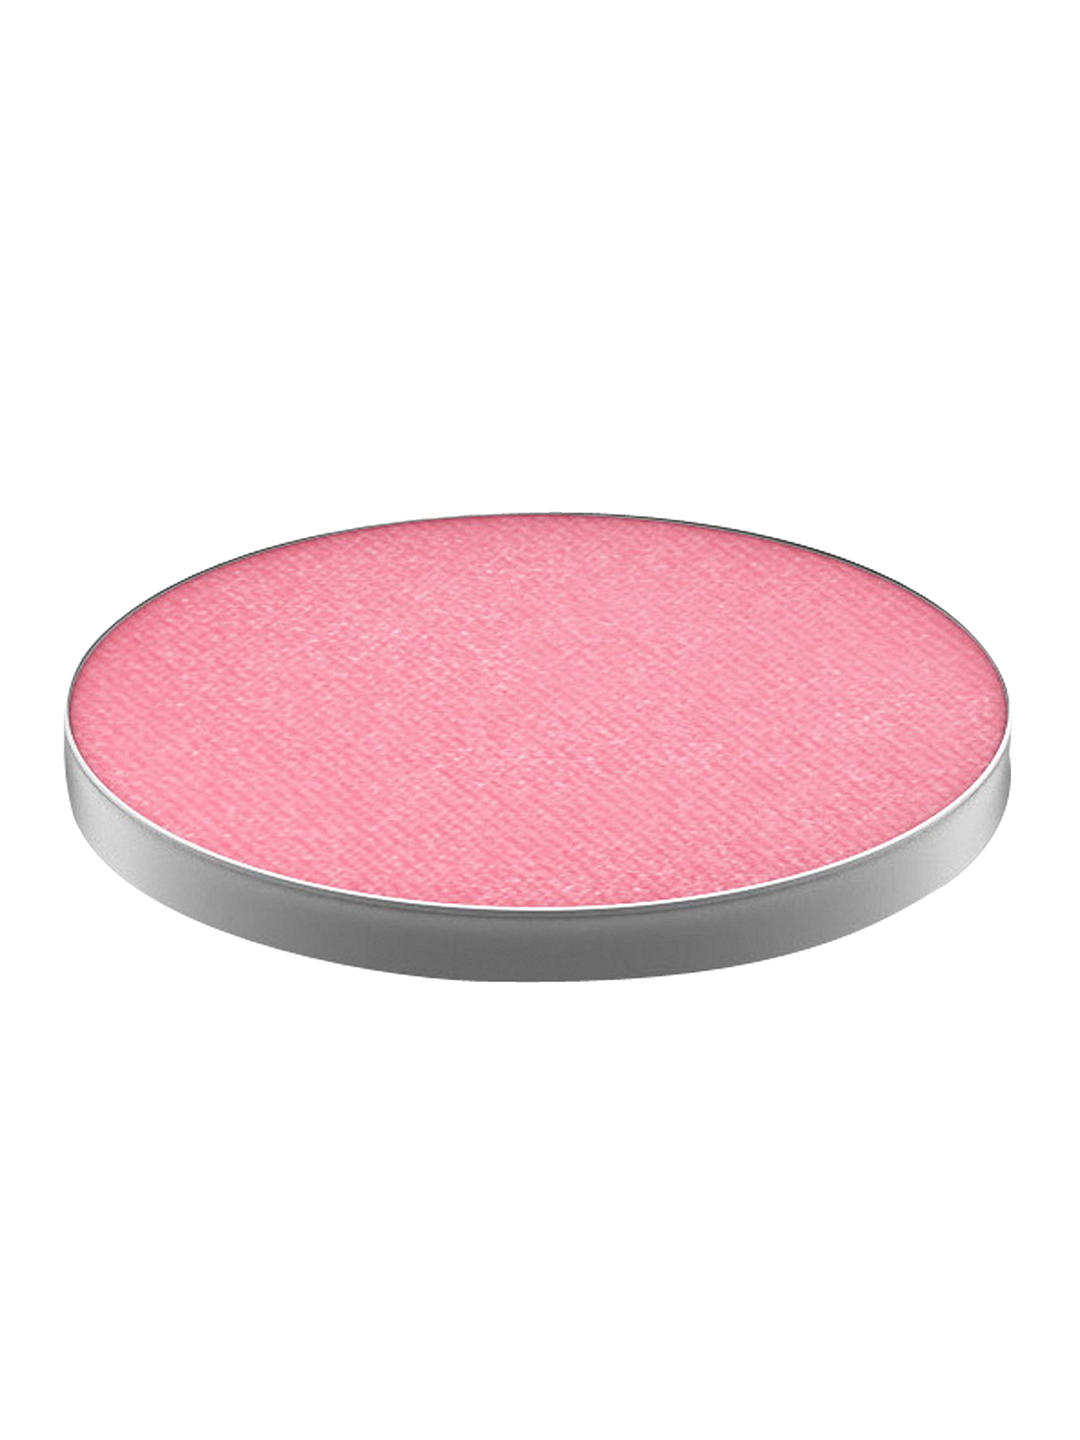 MAC Powder Blush Pro Palette Refill Pan, Dollymix 1